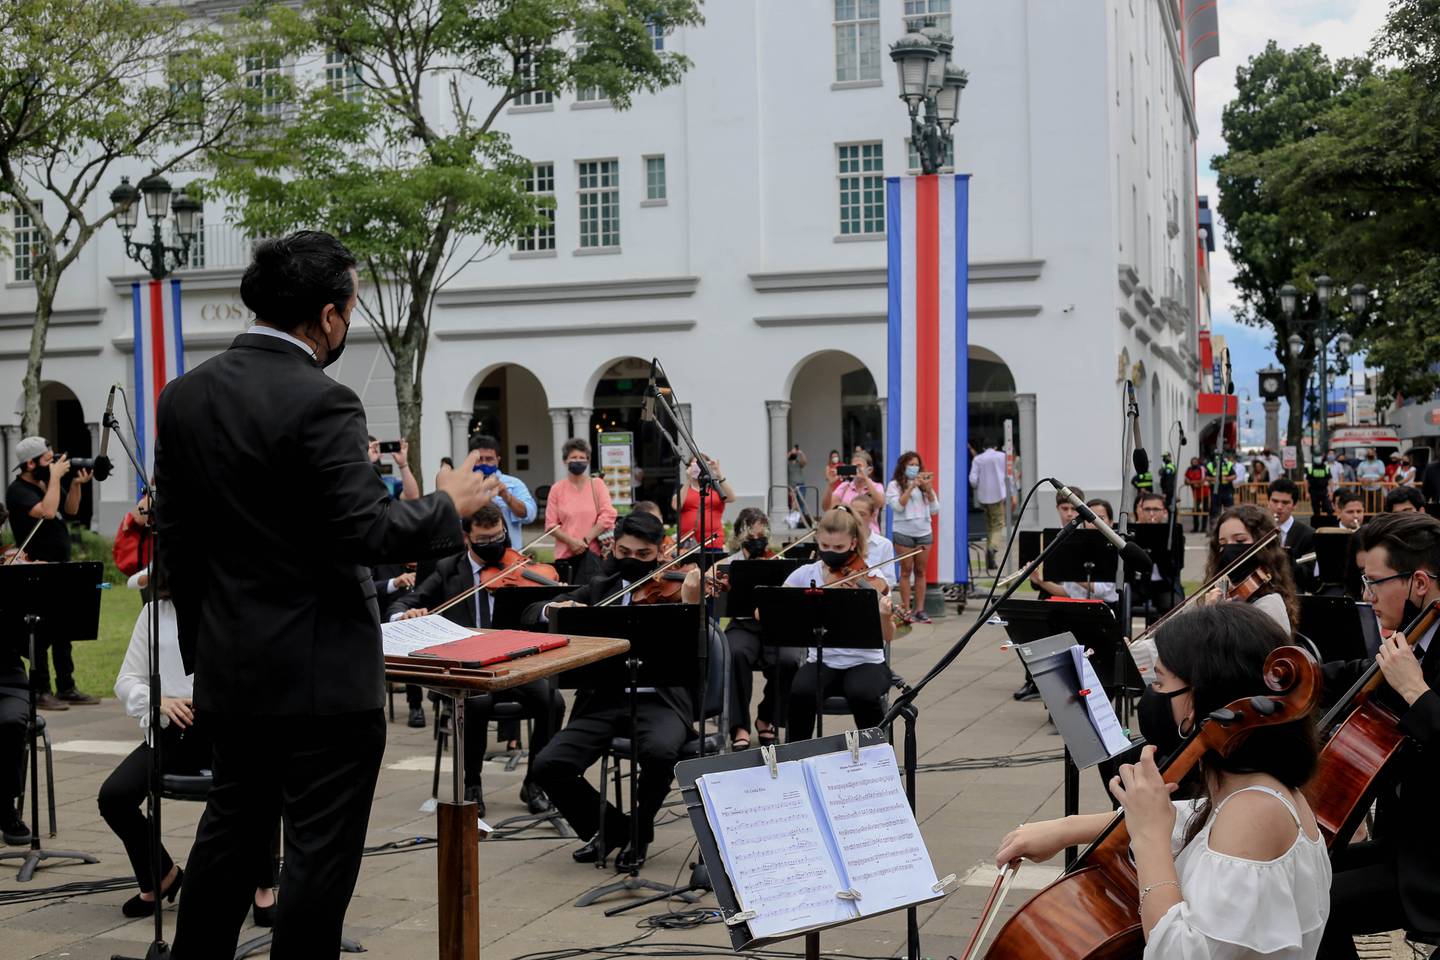 Acto Cívico Celebración de los 200 años de vida independiente y soberana, Bicentenario  de Costa Rica,   15 Setiembre 2021. En la plaza Juan Mora Fernández.